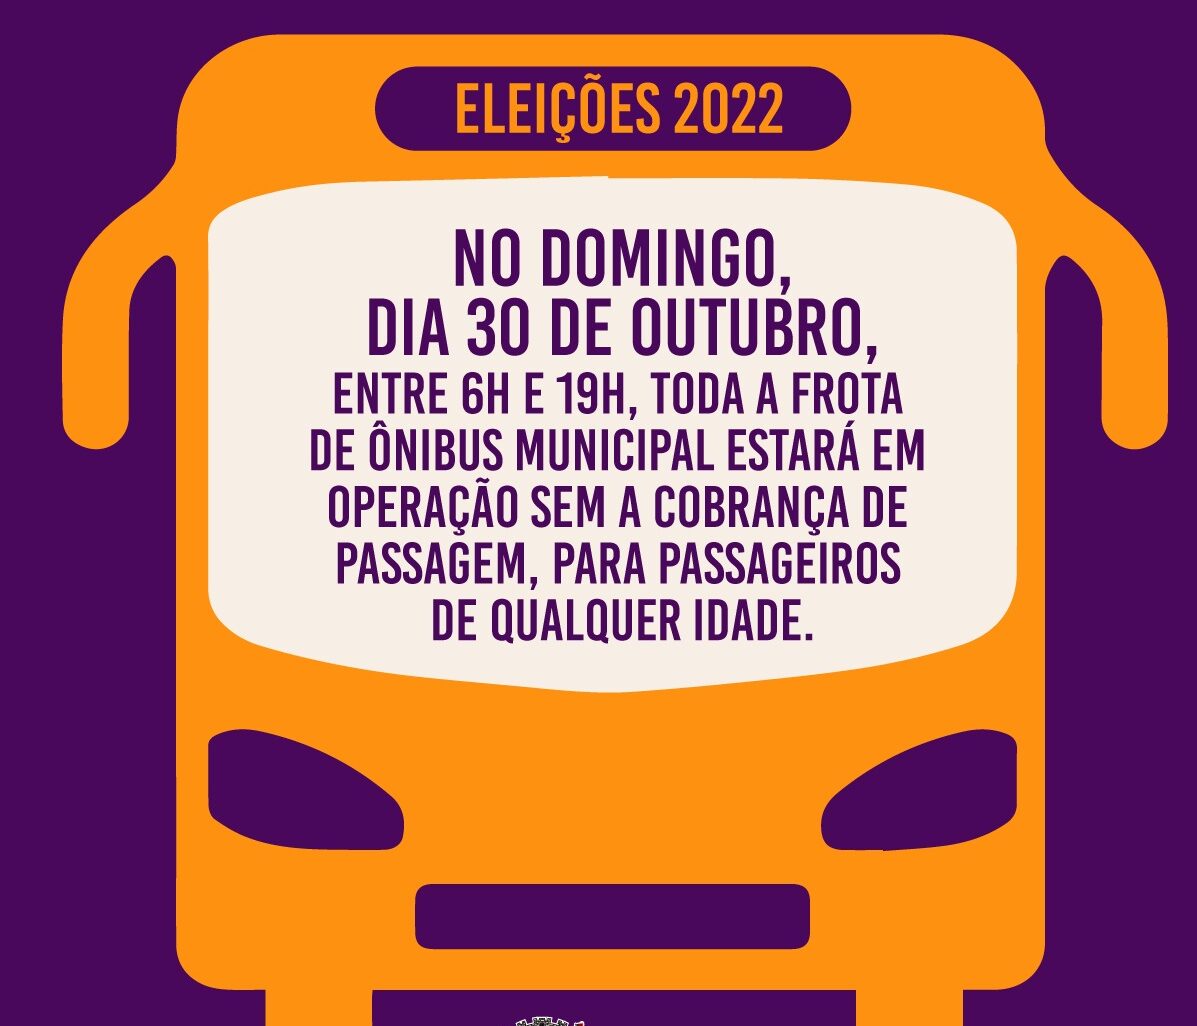 Ônibus gratuito em Aracaju no dia das eleições